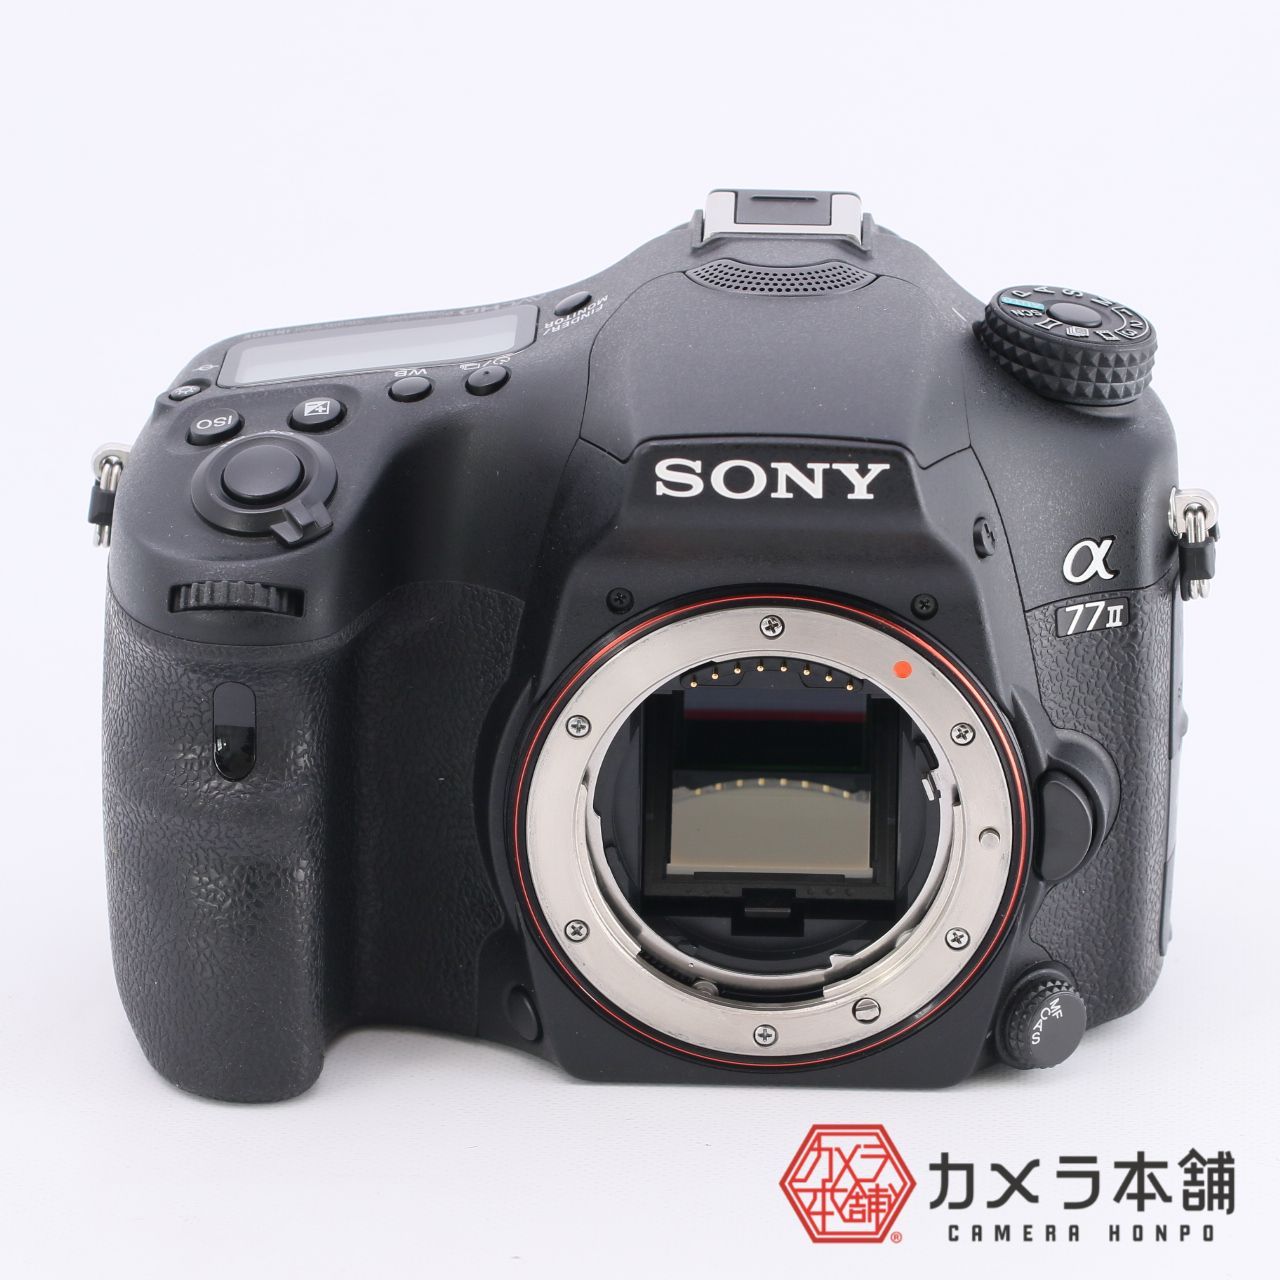 SONY ソニー α77II ボディ ILCA-77M2 デジタル一眼レフカメラ - カメラ